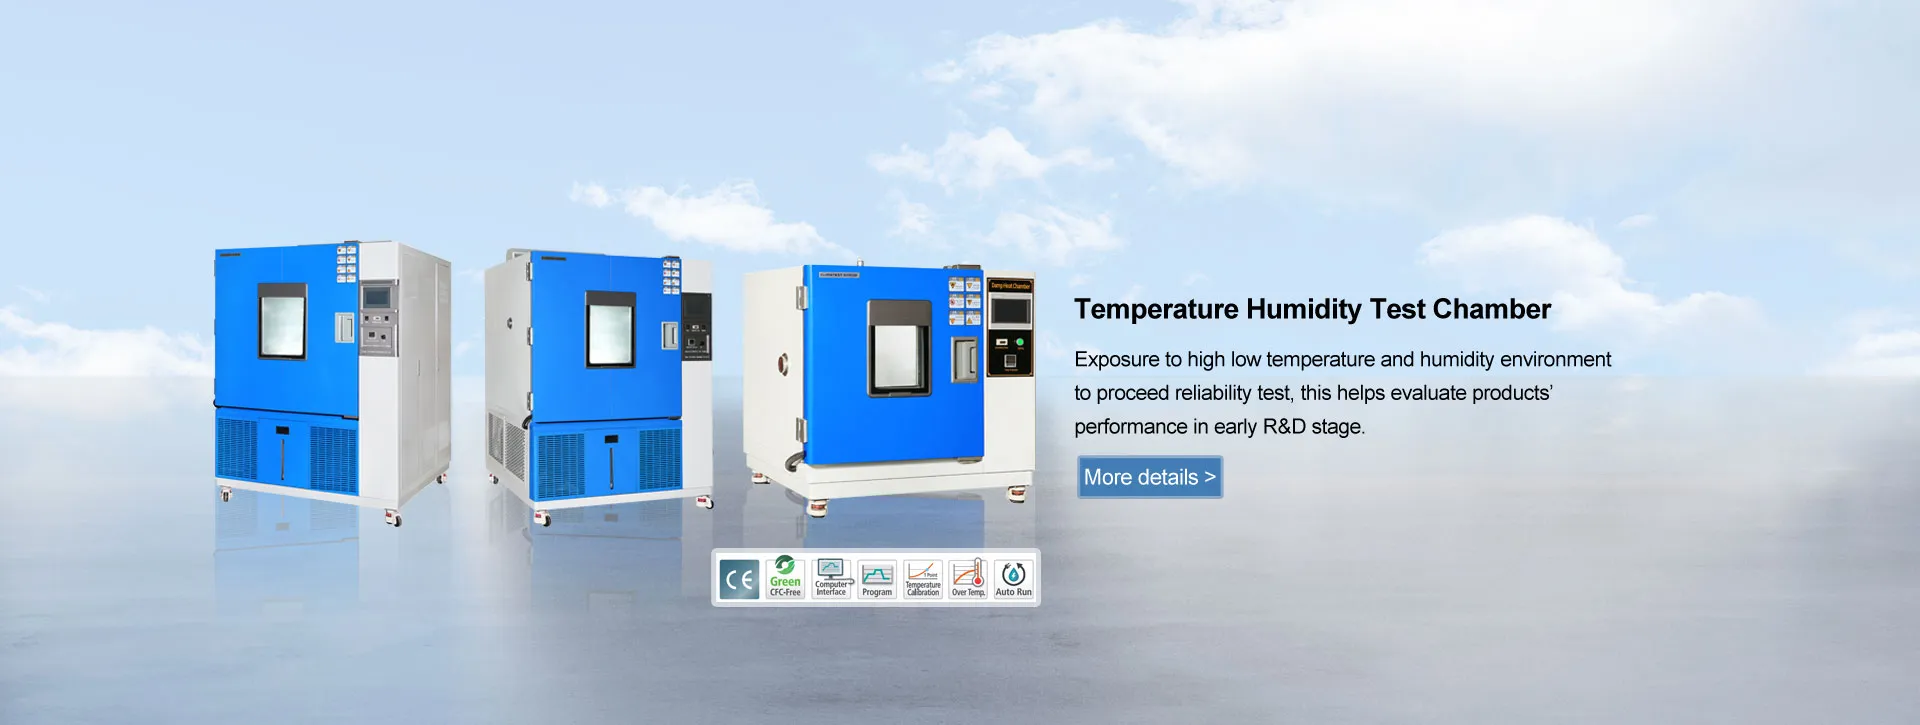 Výrobci zkušební komory pro měření teploty a vlhkosti